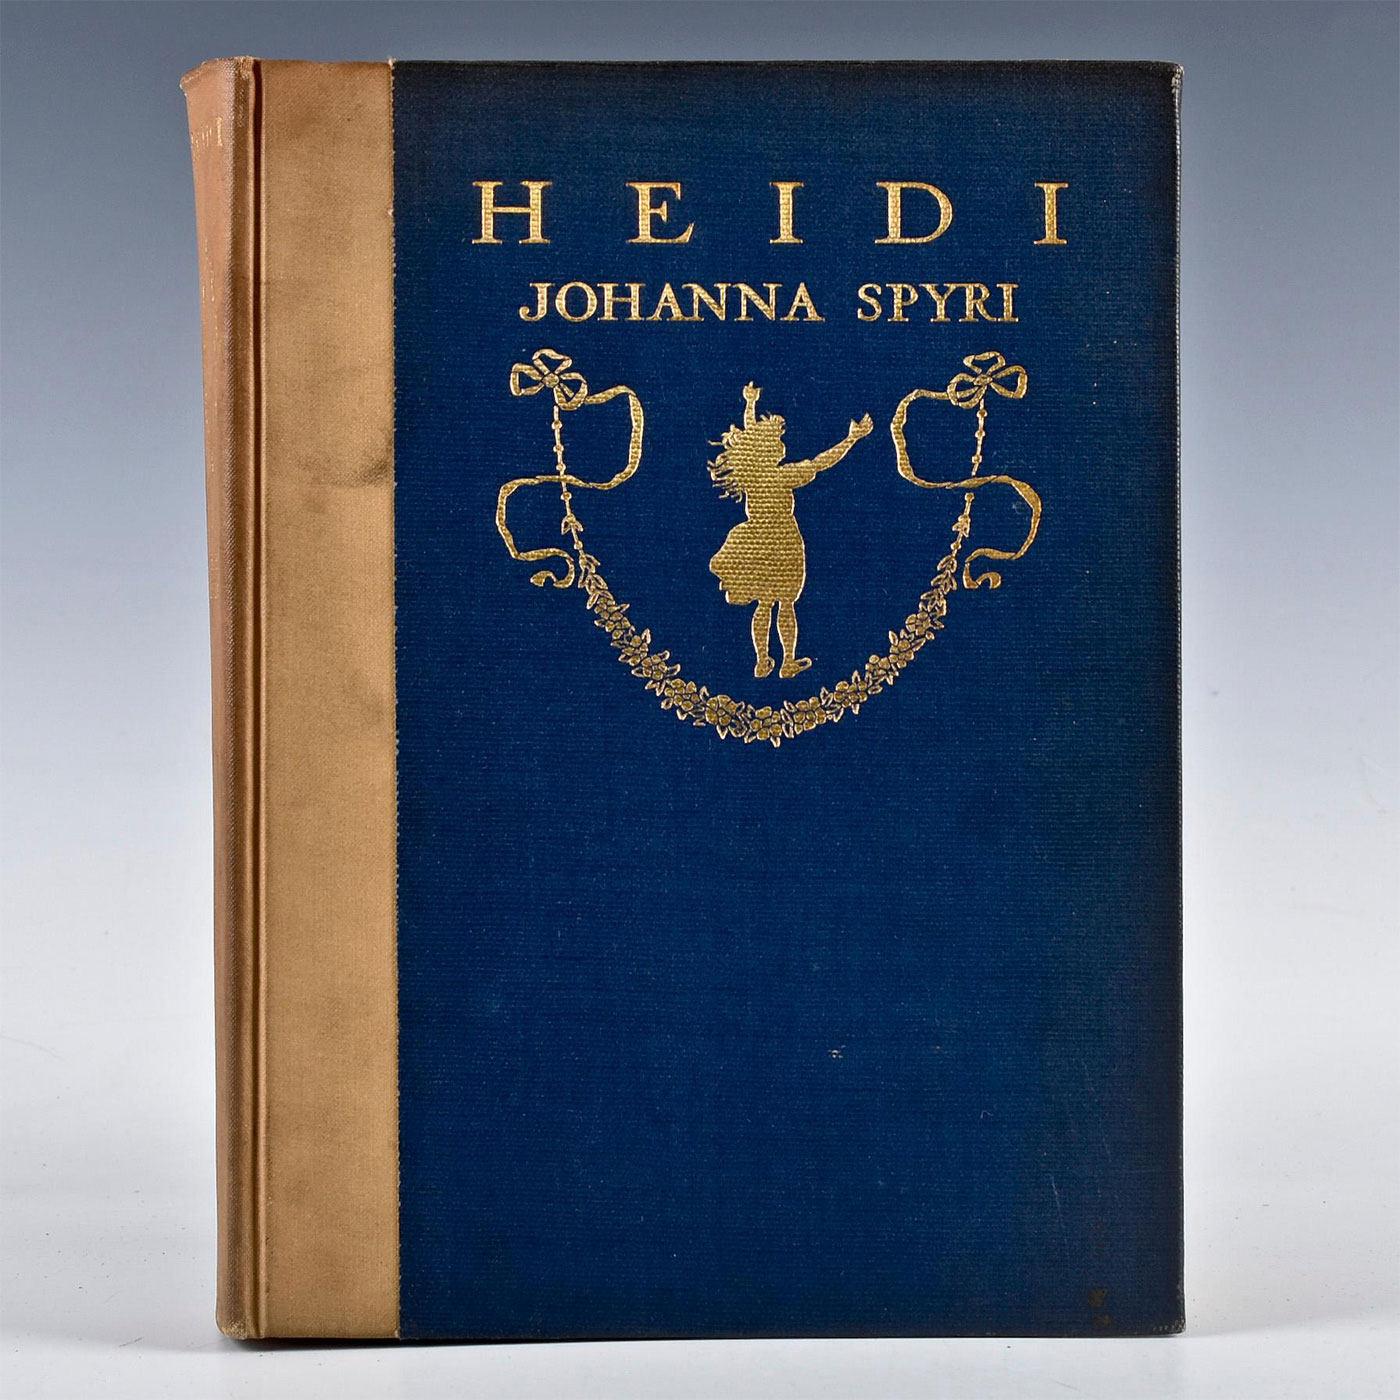 HEIDI BOOK BY JOHANNA SPYRI ILLUSTRATED BY MARIA L. KIRK